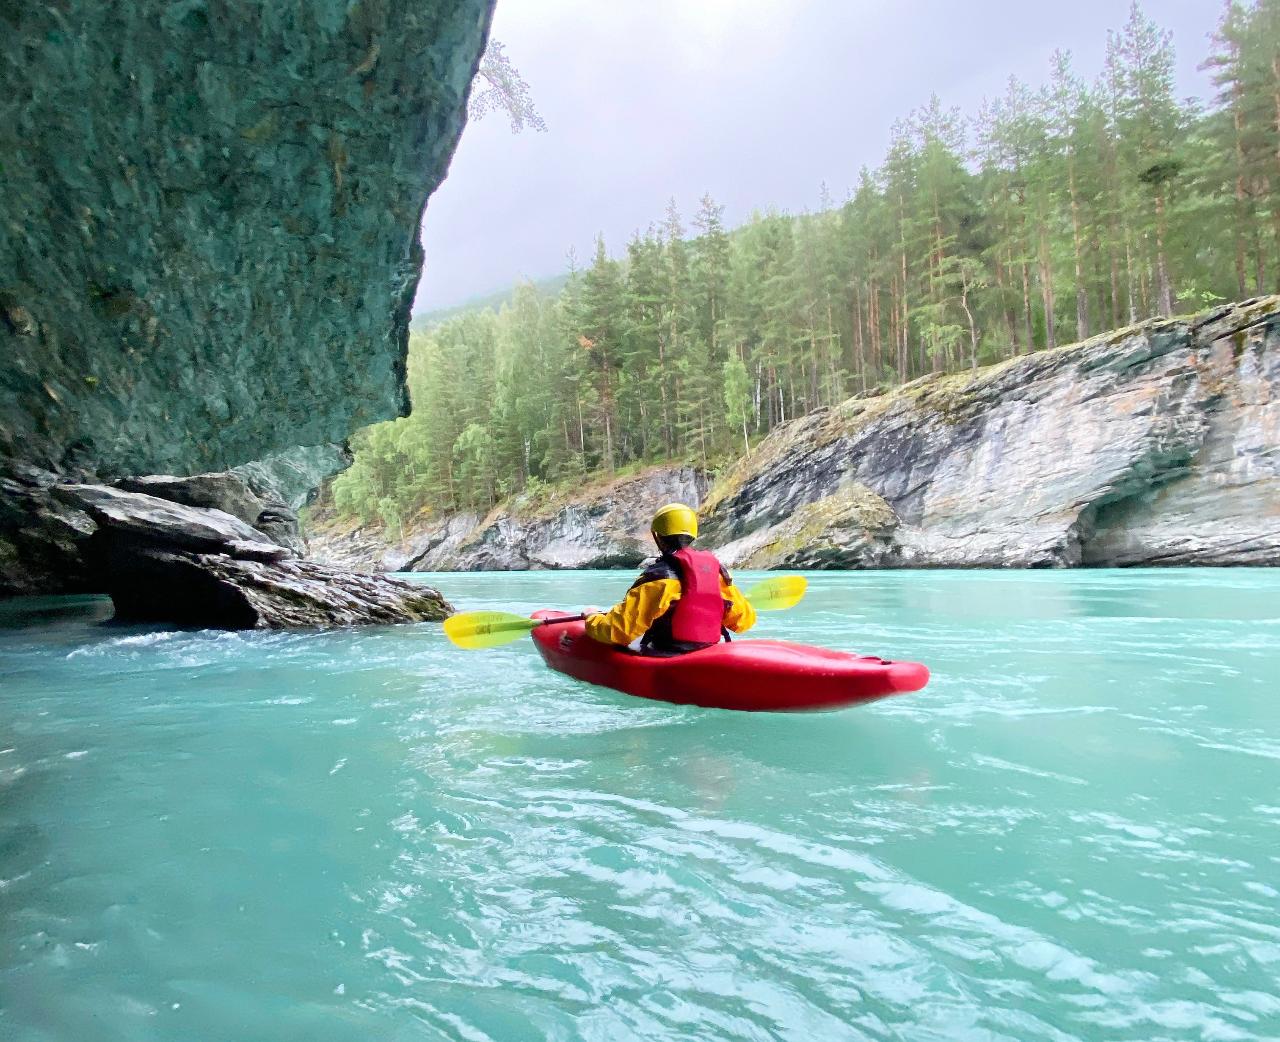 5hr Whitewater Kayaking or Packrafting Våttkort Beginner Course (introkurs) – Sjoa, Norway